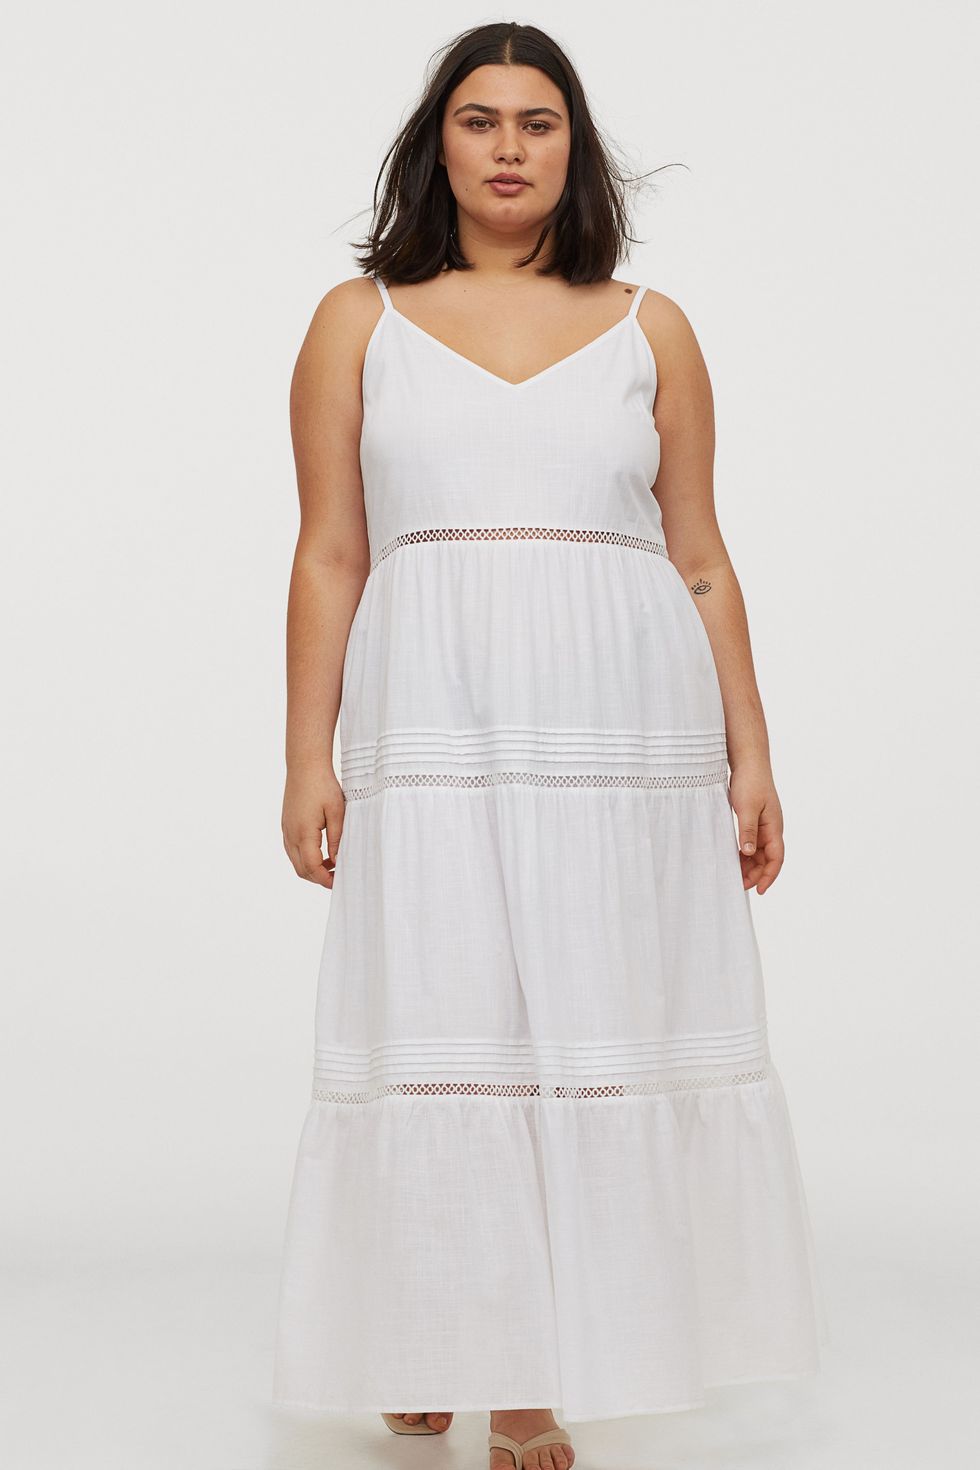 mirar televisión Dependiente agenda Nace el vestido largo blanco para bajitas de talla grande en H&M